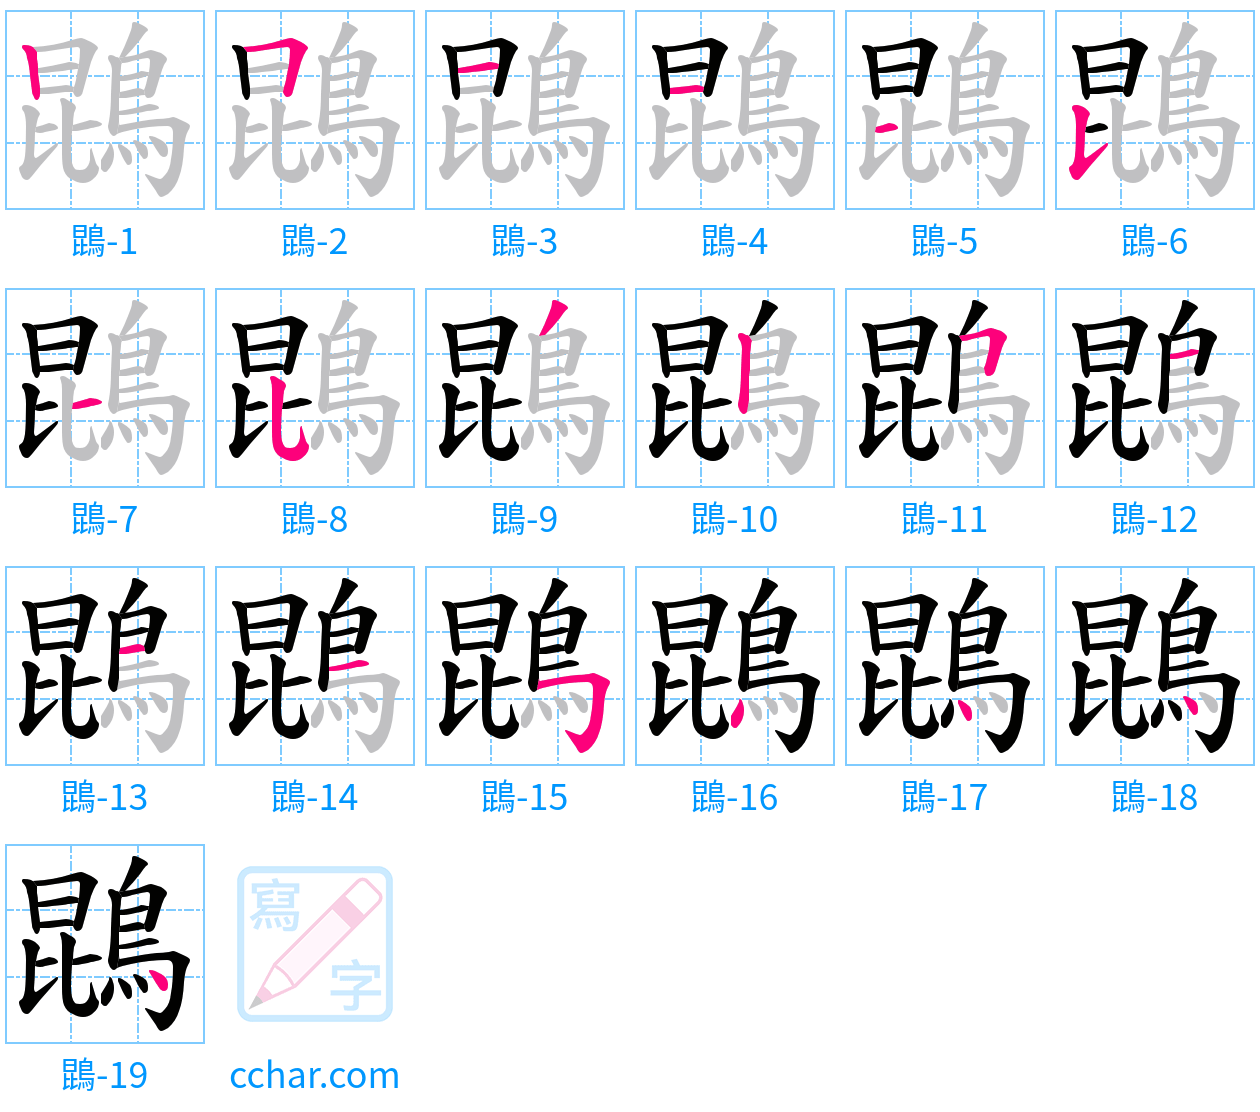 鵾 stroke order step-by-step diagram